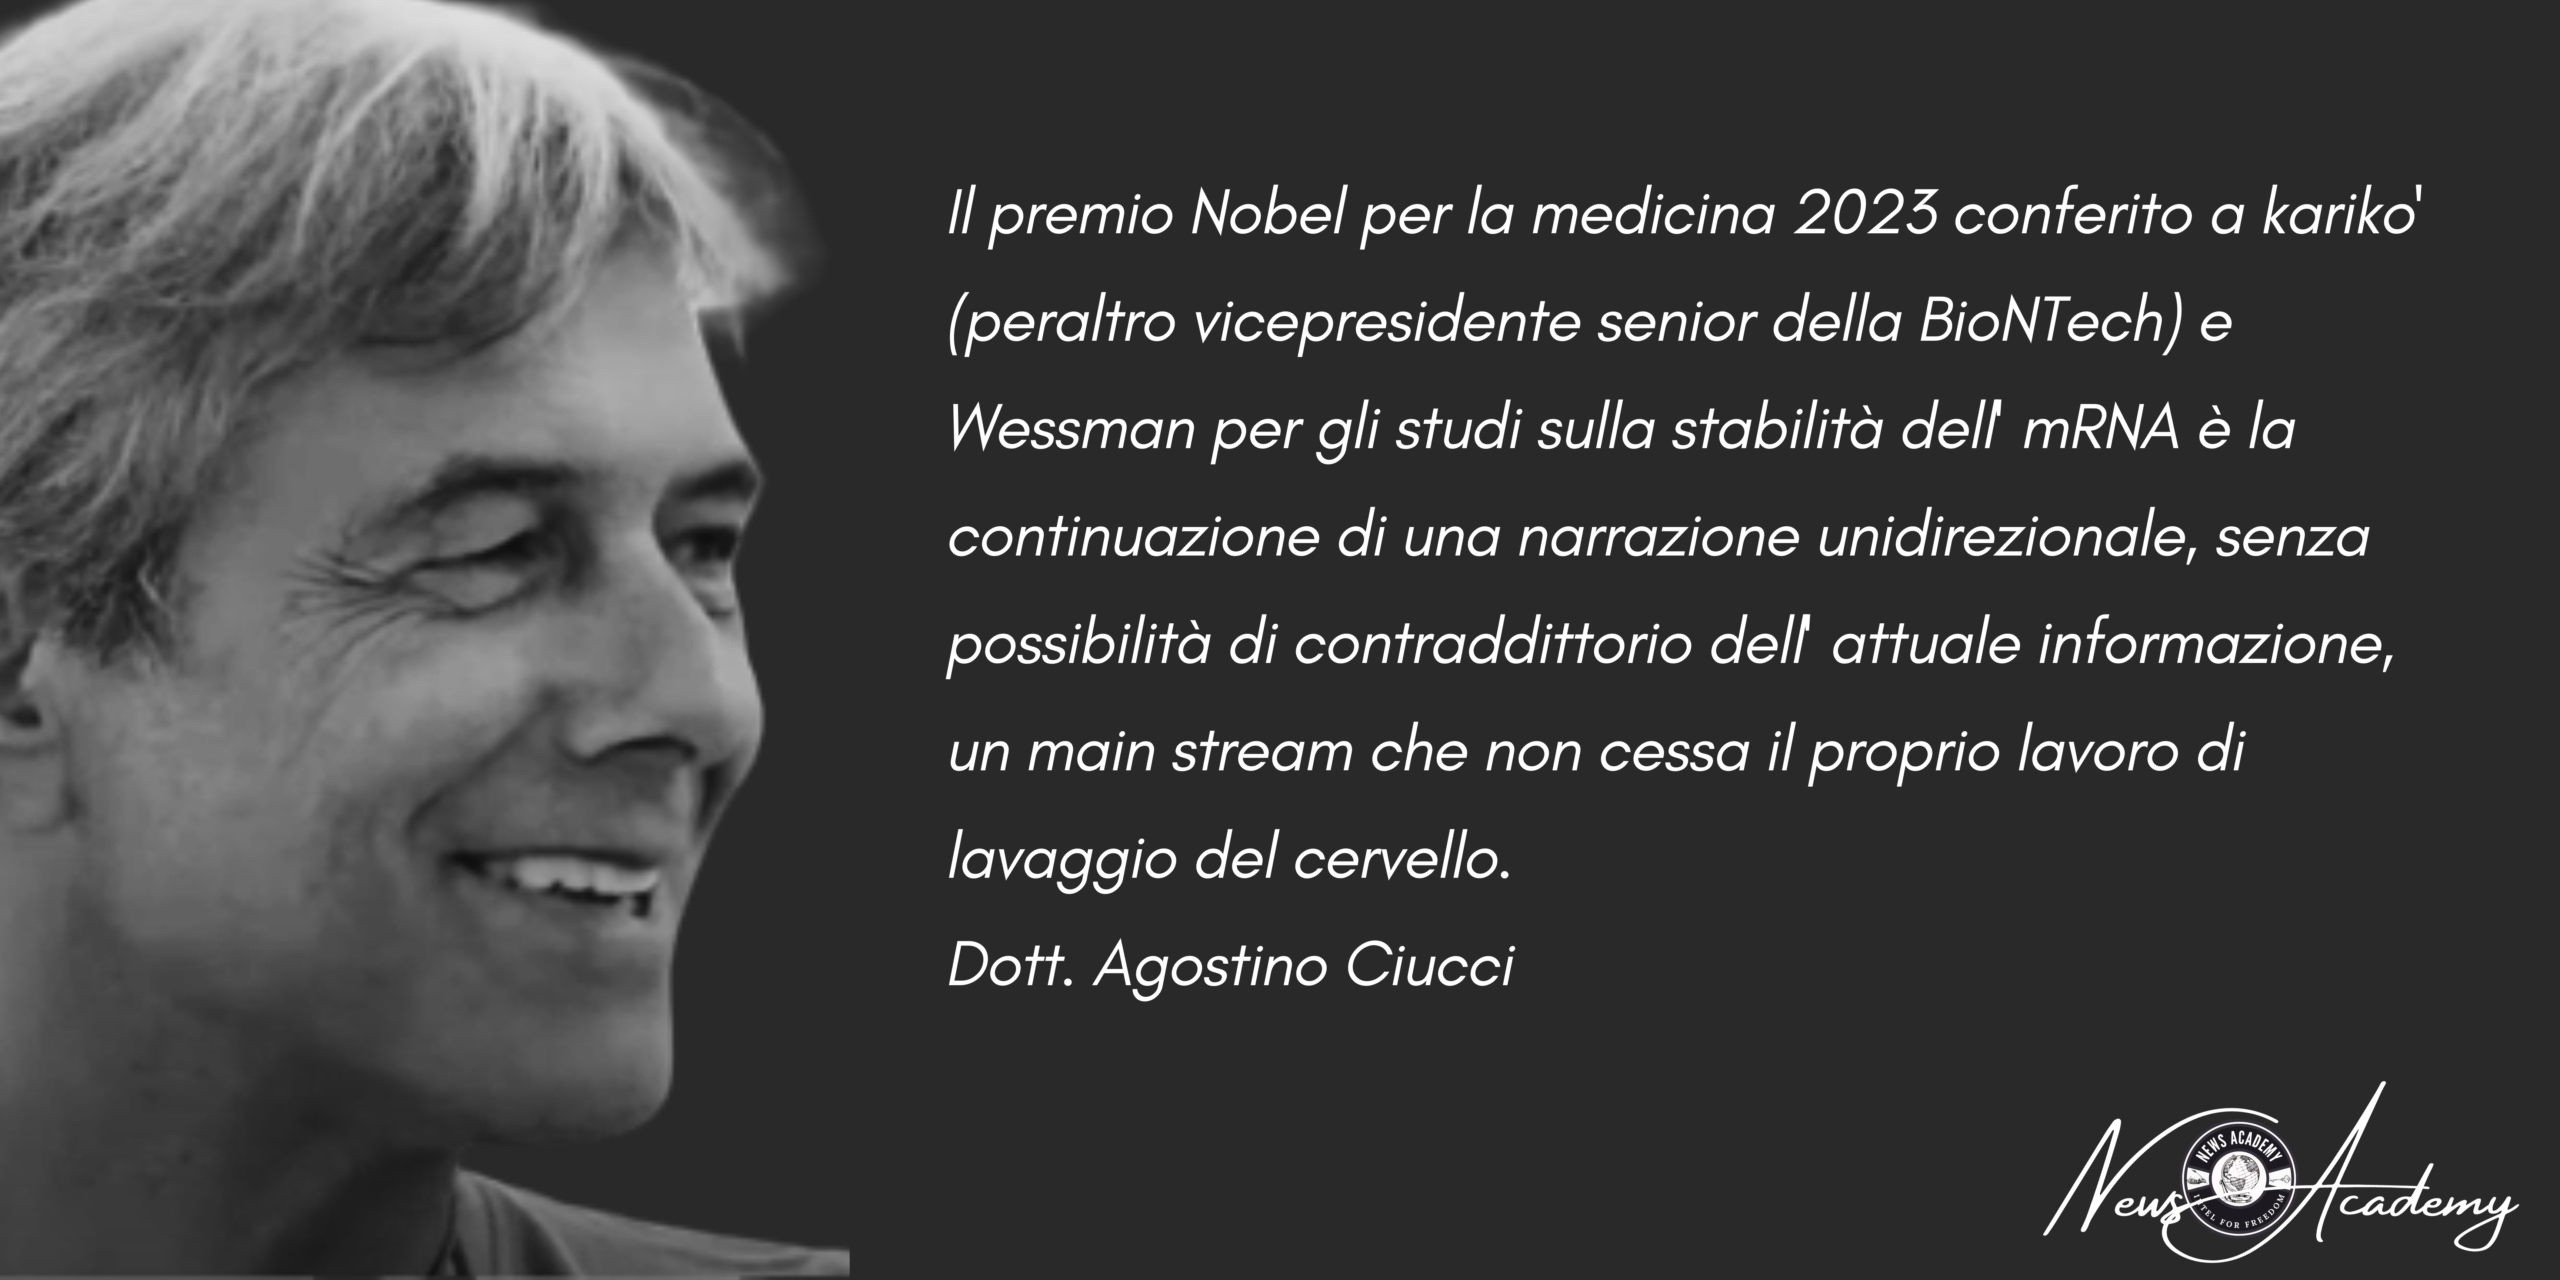 Ciucci: "Con Il Premio Nobel per la Medicina 2023 continua il 'Lavaggio del Cervello' per l'Umanità!"- "Preoccupazioni serie su tossicità dell'mRNA e proteine Spike per l'organismo umano" News Academy Italia